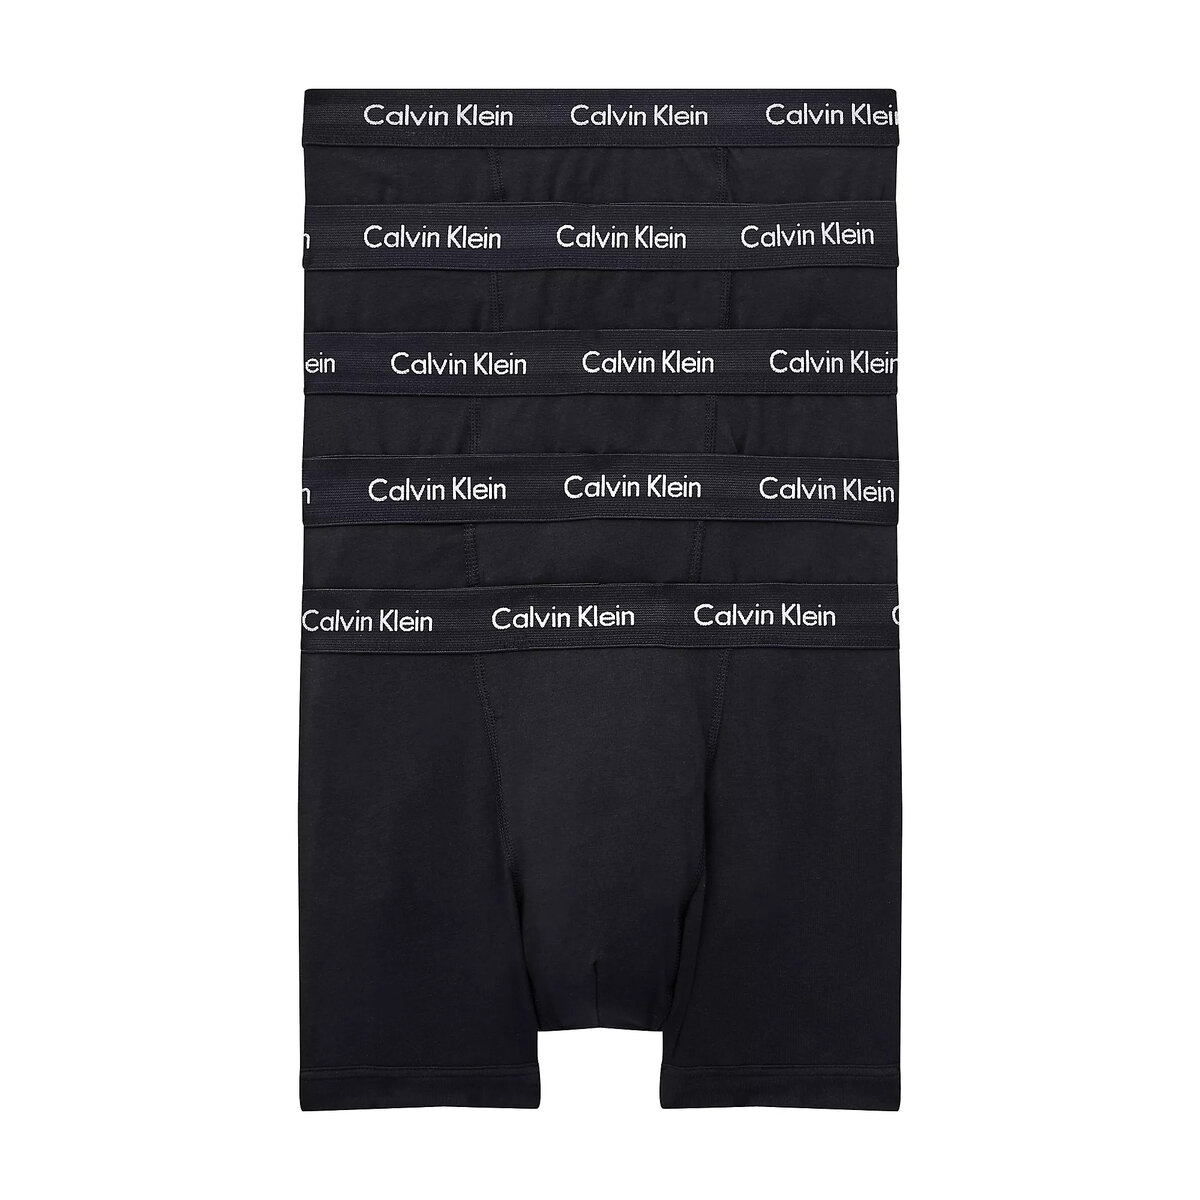 Mužské boxerky ESSENTIALS 5KS - Calvin Klein, XS i652_000NB2877AXWB001